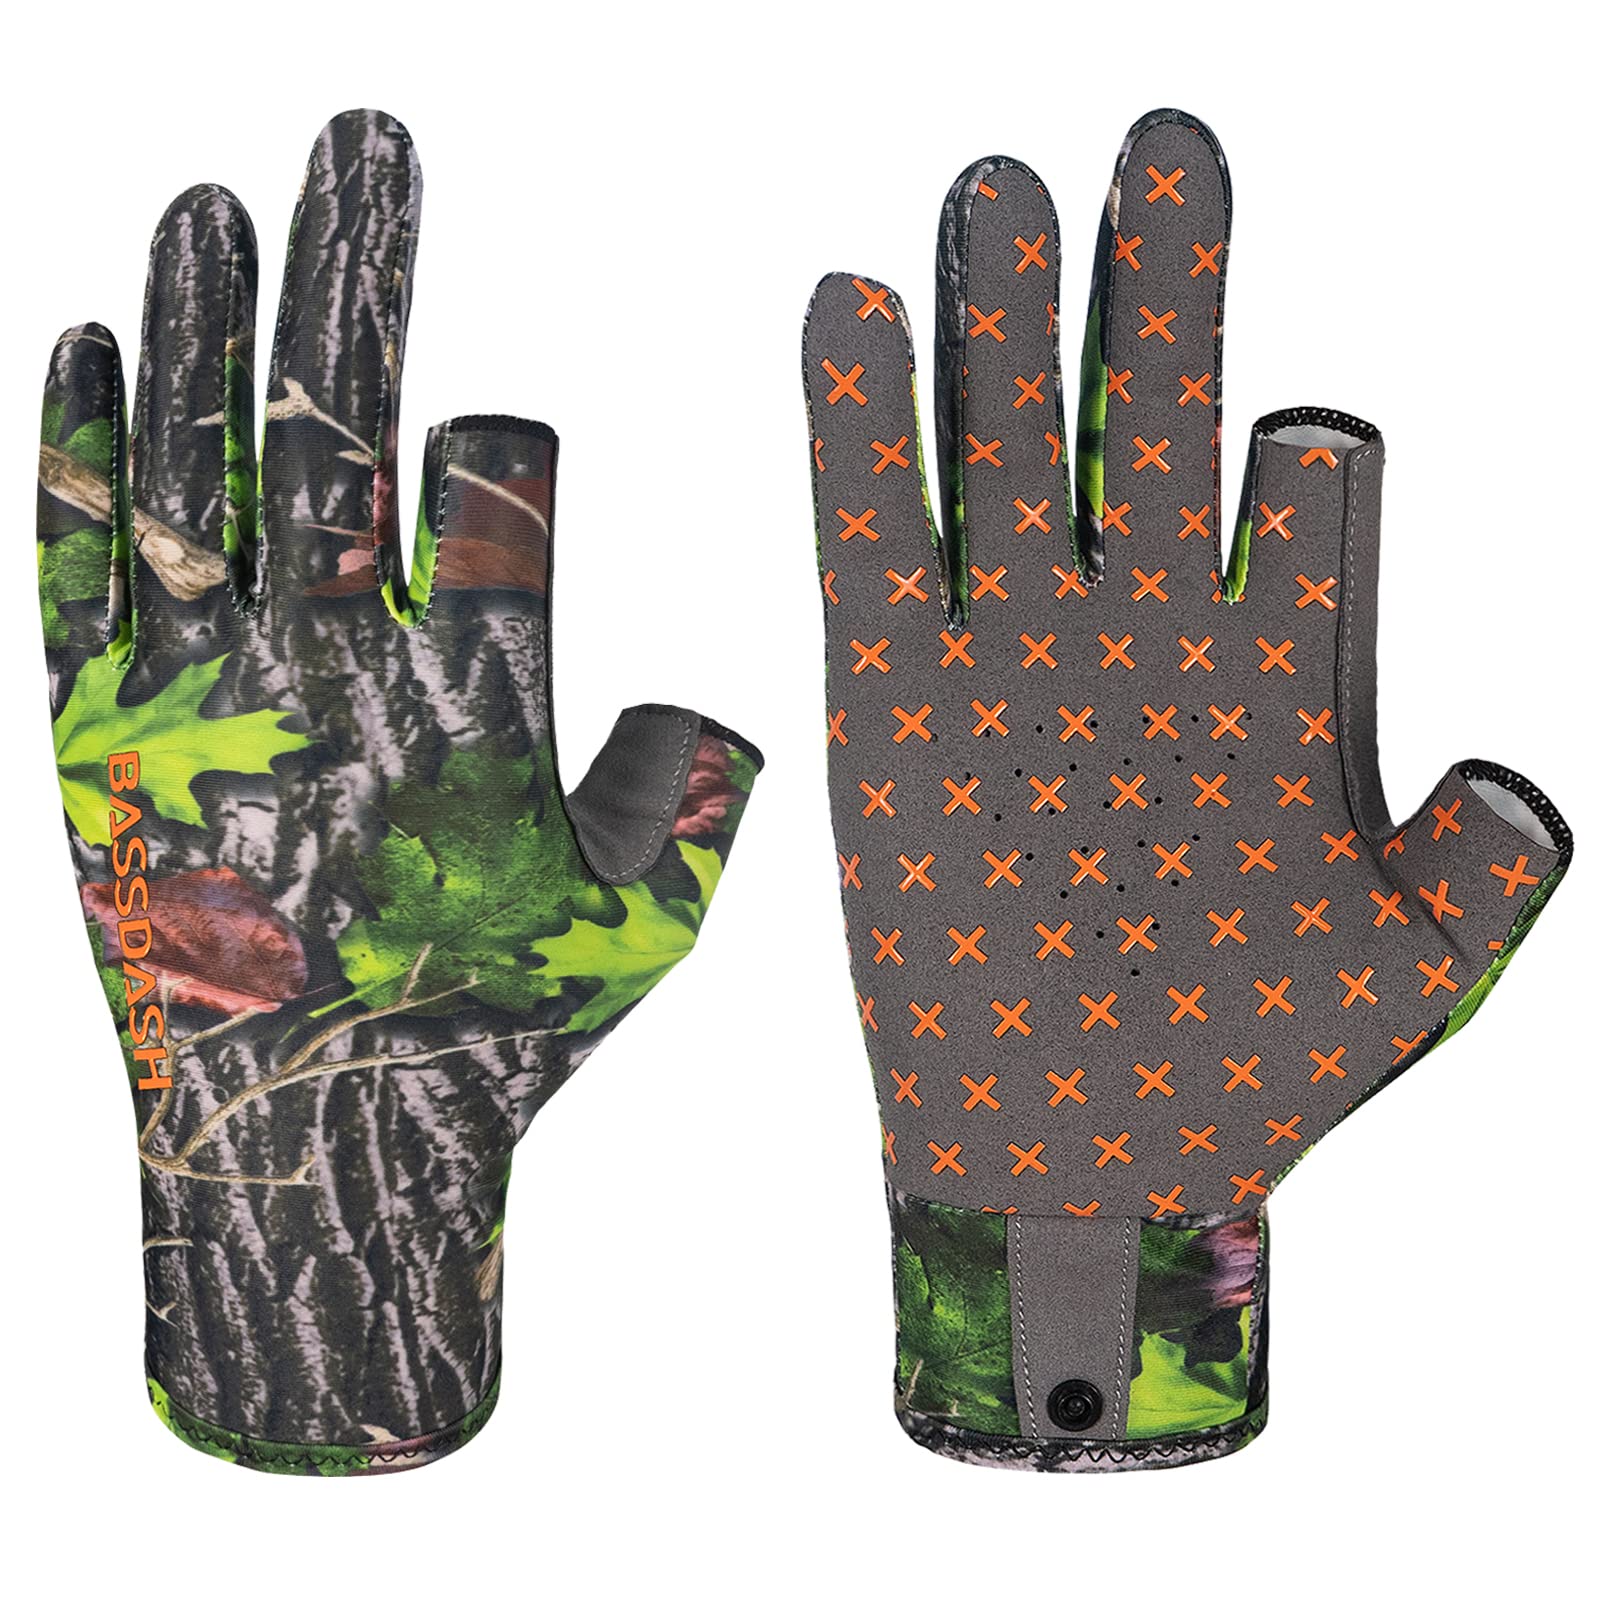 BASSDASH Unisex Fingerless Camo Hunting Gloves for Men's Women's